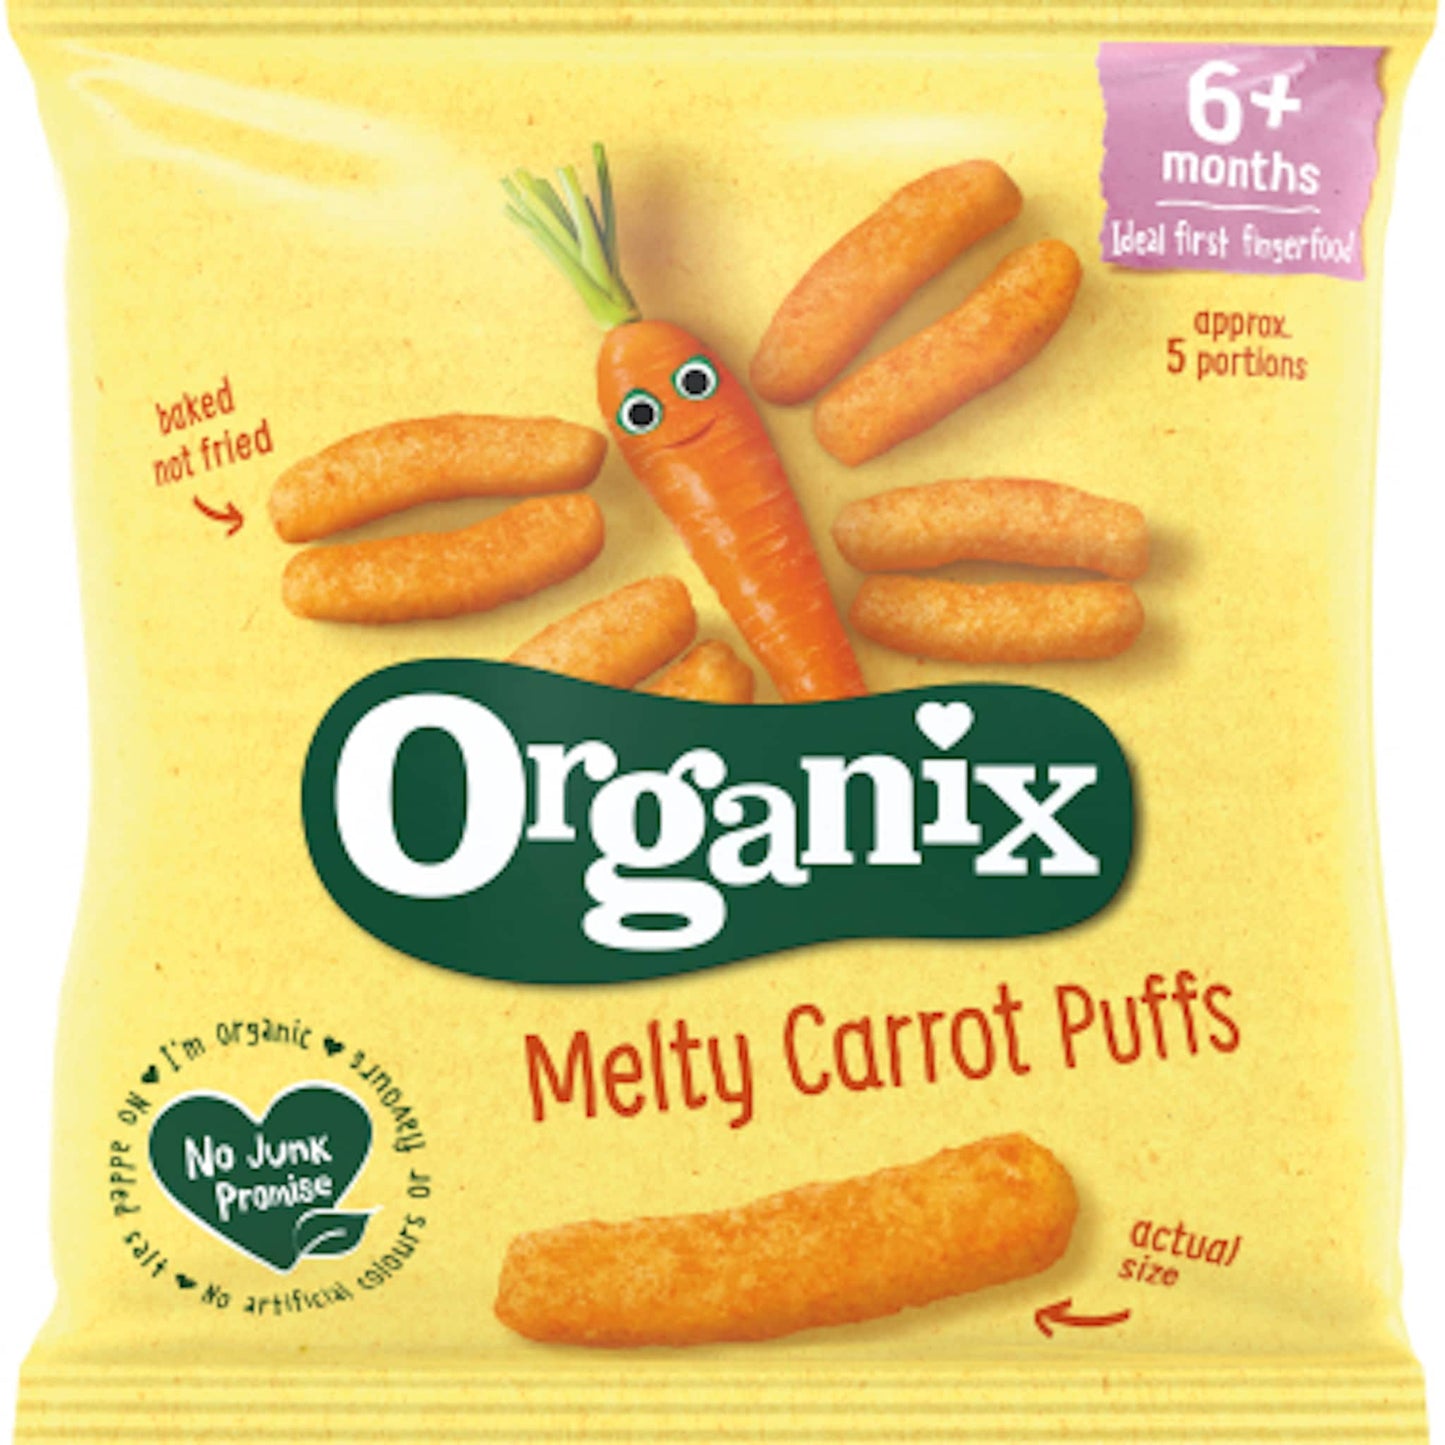 Organix Melty Carrot Puffs